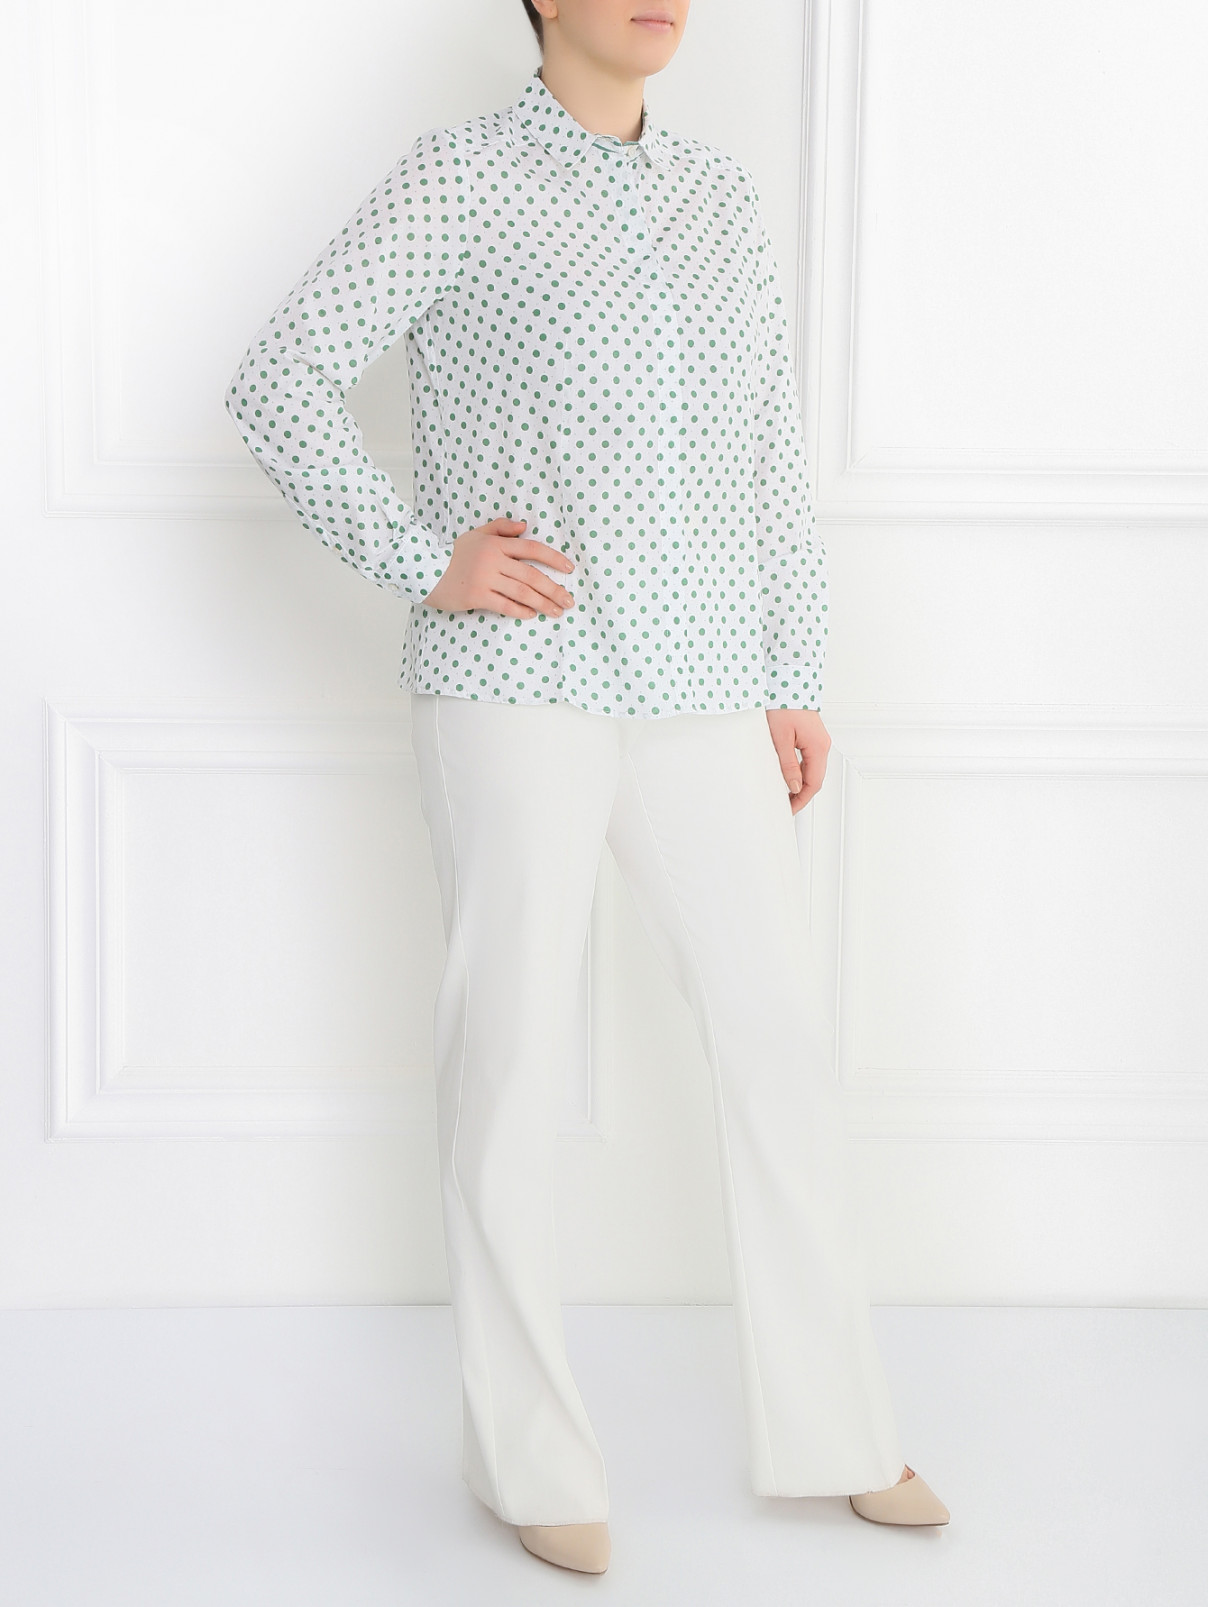 Рубашка из хлопка с узором Marina Sport  –  Модель Общий вид  – Цвет:  Белый